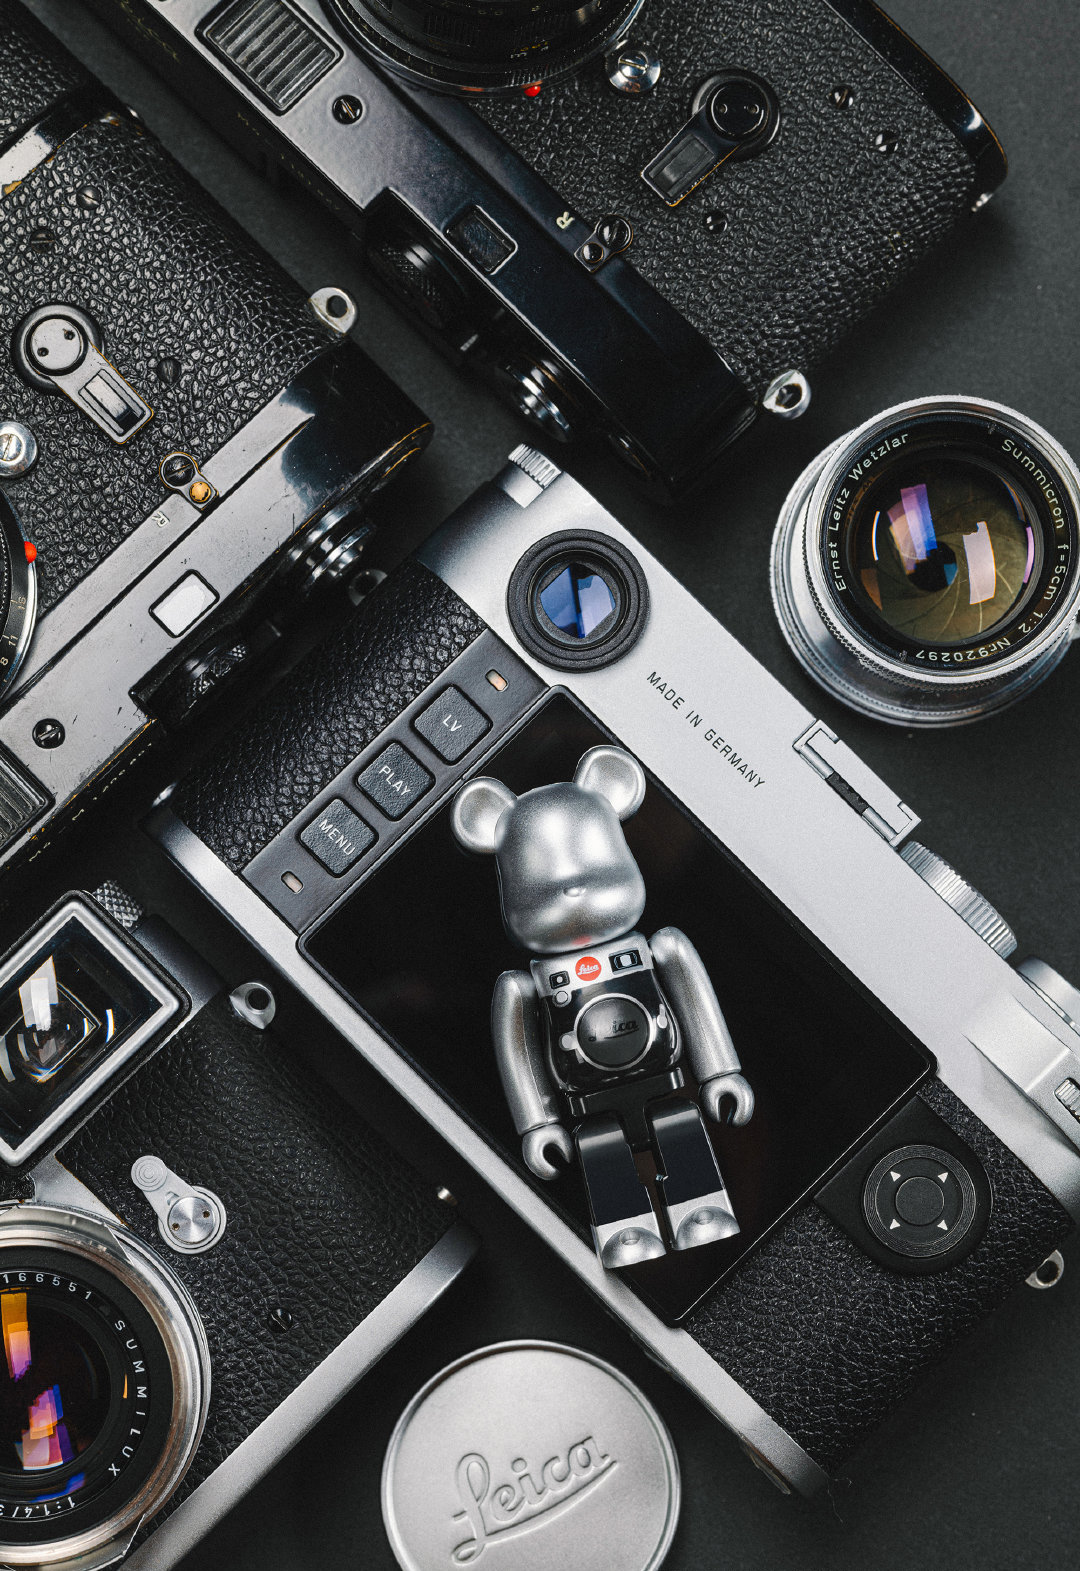 Leica x Medicom Toy: bản Be@rbrick dành cho anh em richkid đam mê nhiếp ảnh